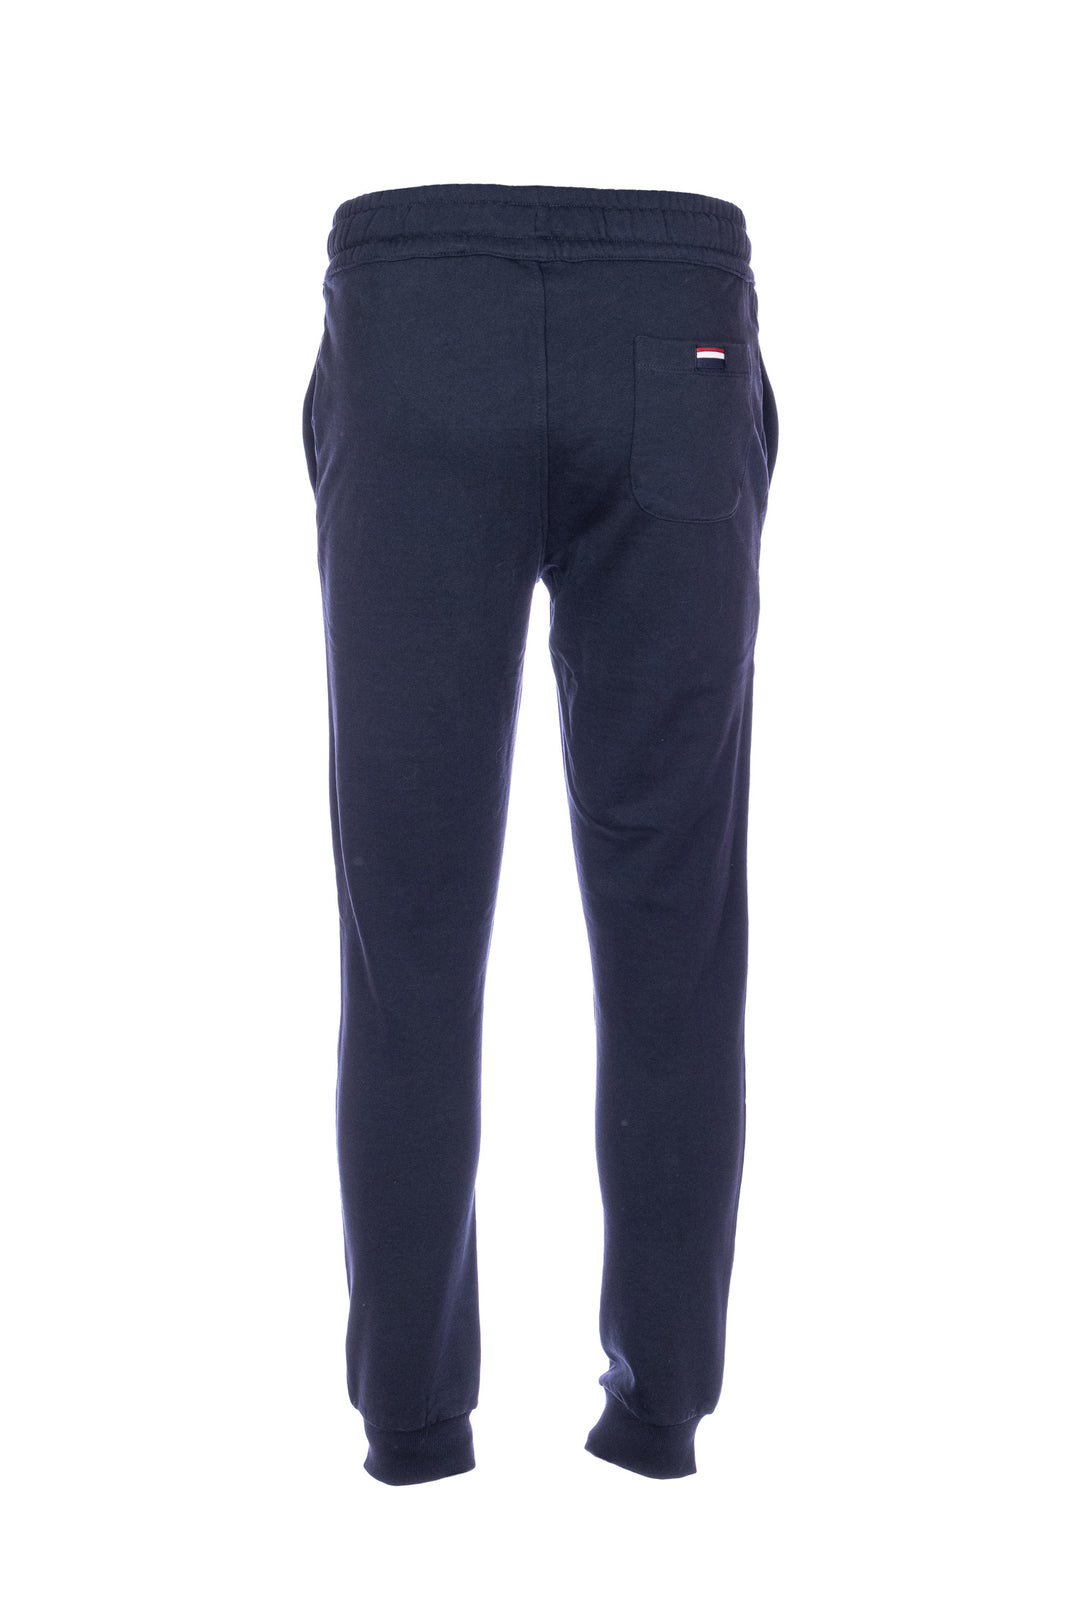 U.S. POLO ASSN. Pantalone sportivo blu navy in cotone con logo U.S. Polo Assn. - Mancinelli 1954